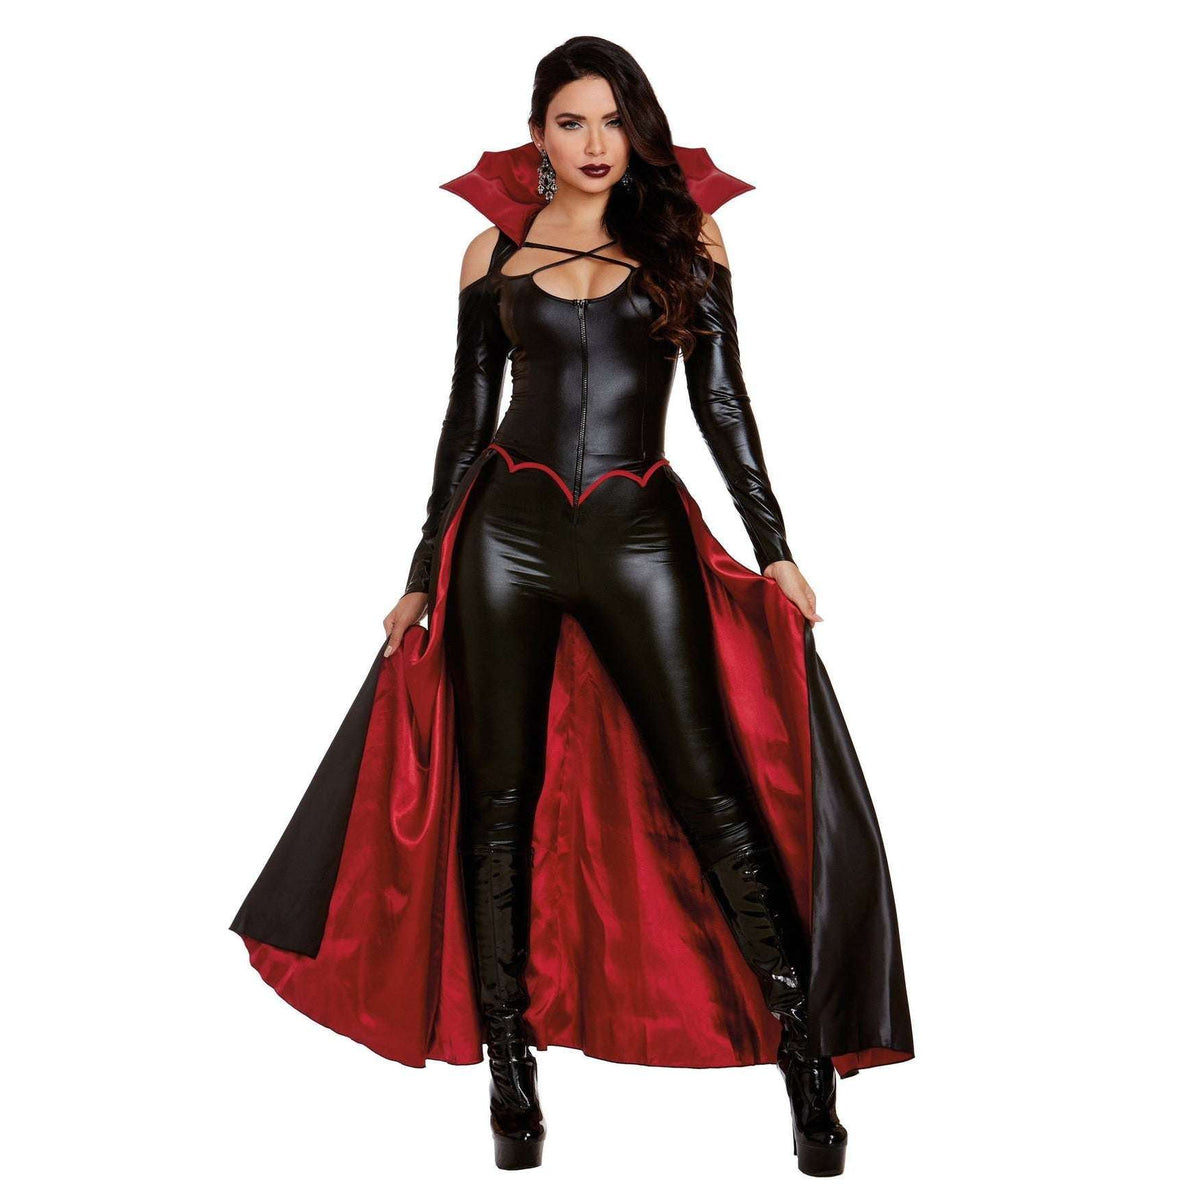 Princess Of Darkness Women's Sexy Vampire Costume